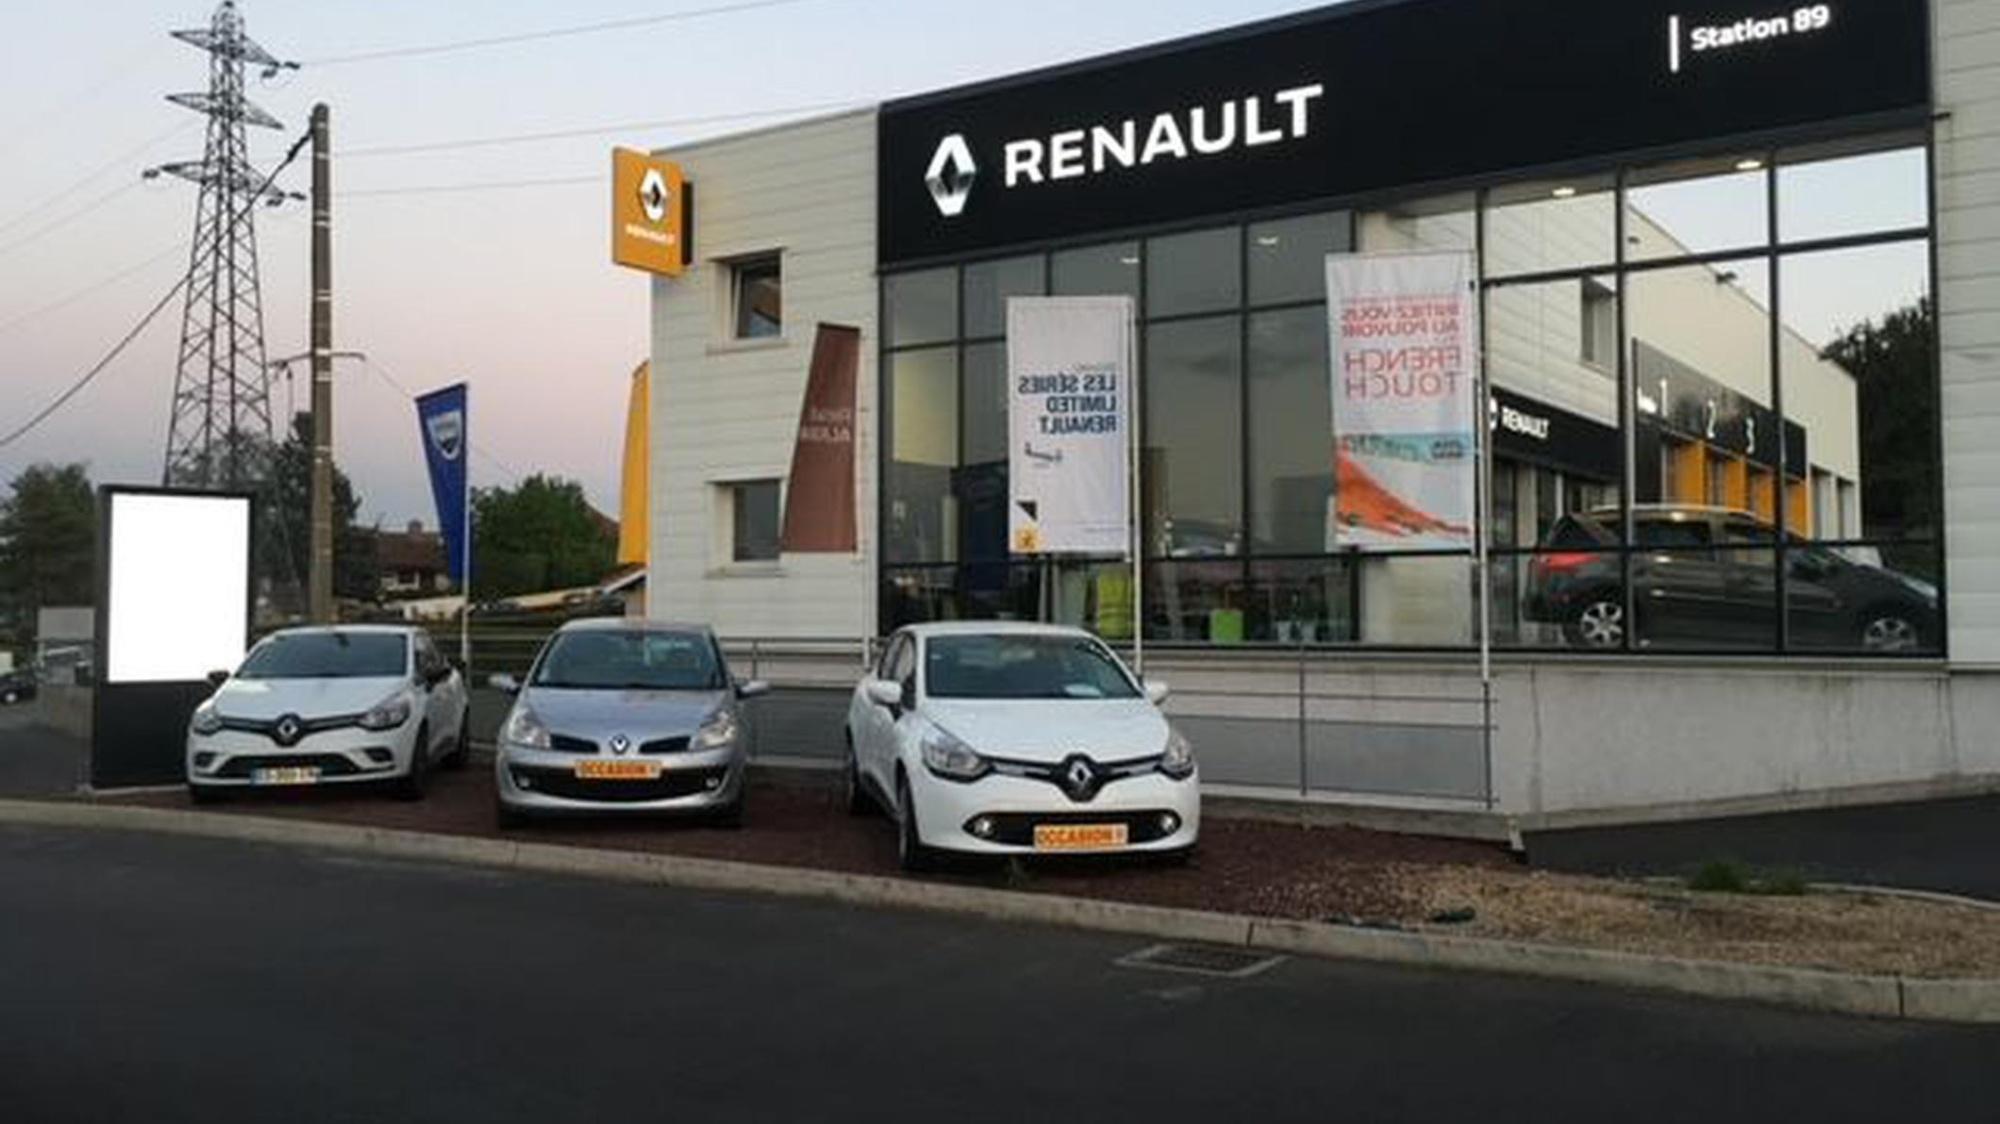 Renault / Dacia Garage Station 89 Sarl Beaumont